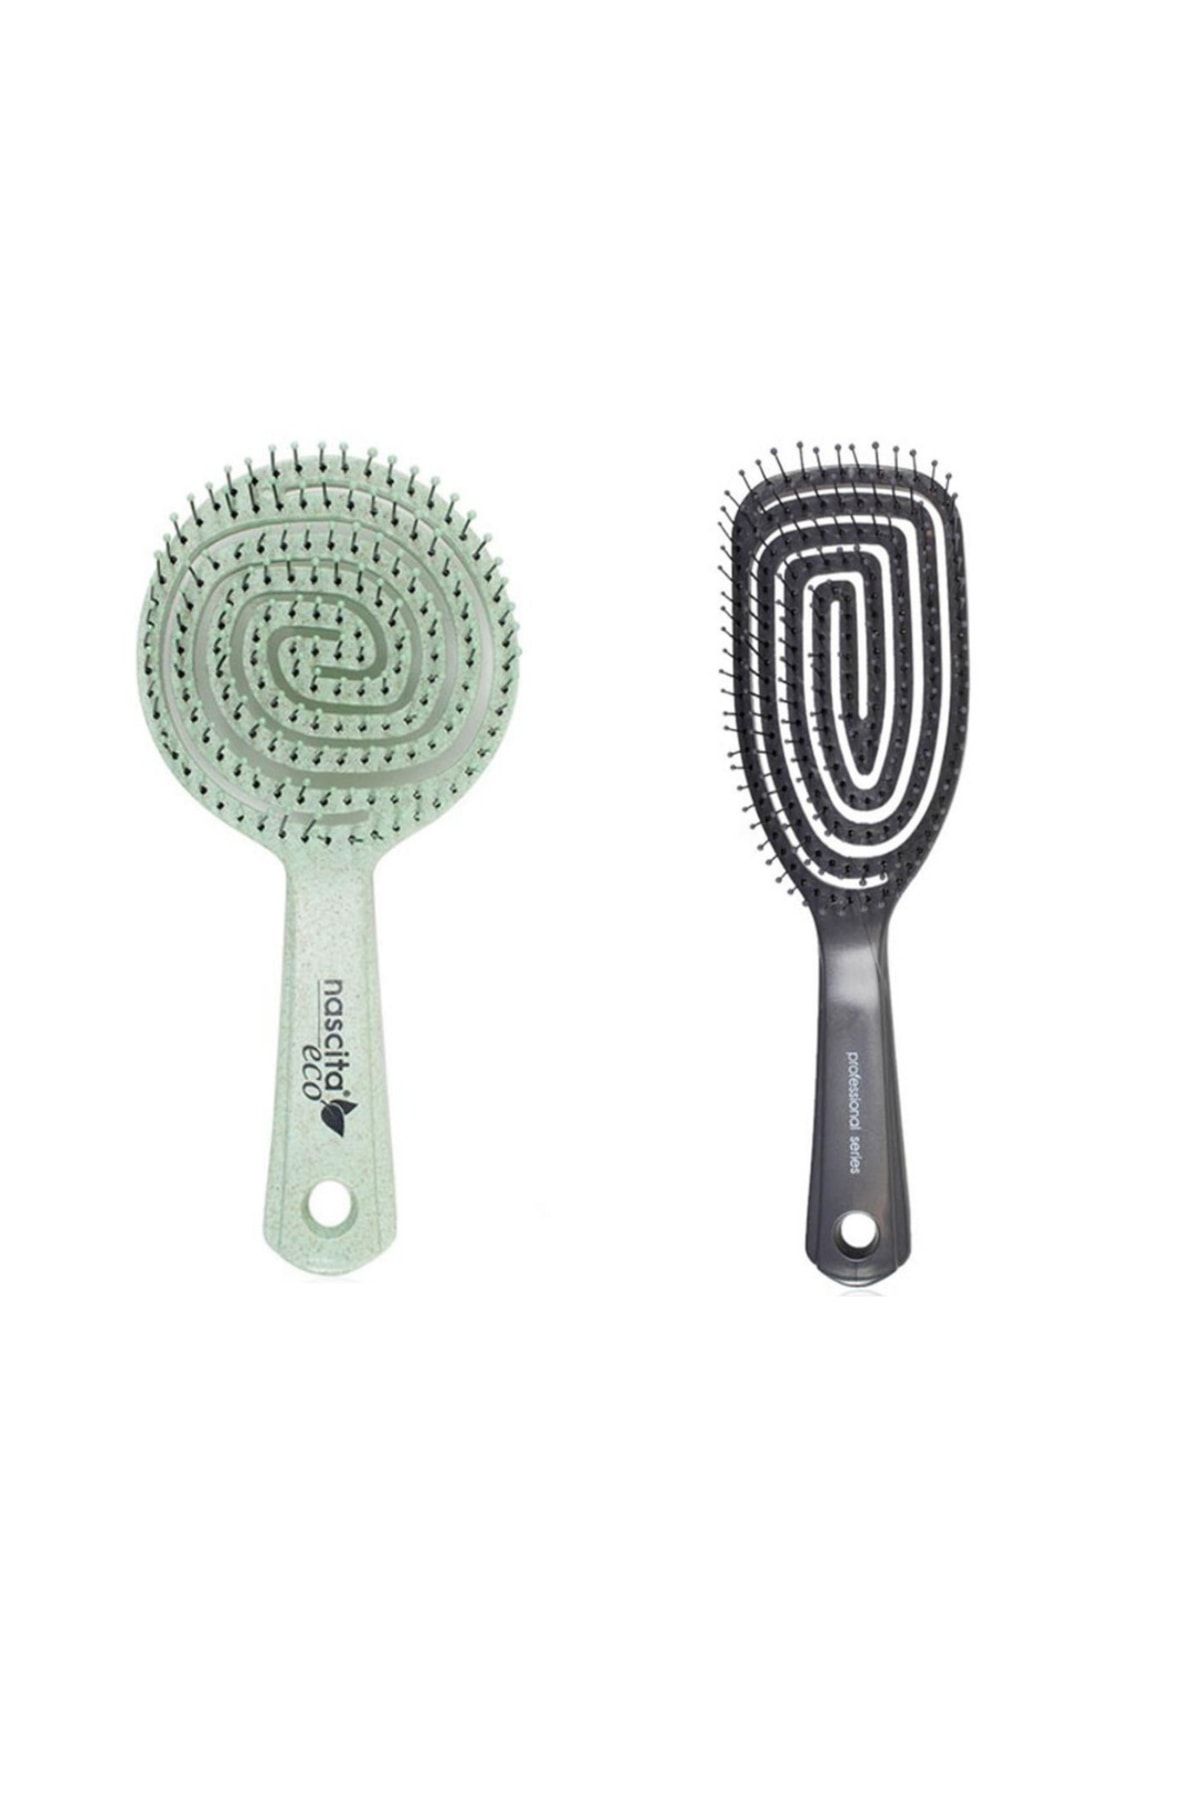 Nascita Geri Dönüşümlü Saç Fırçası Pro'2g Yeşil + Pro Üç Boyutlu Saç Fırçası 01 Siyah